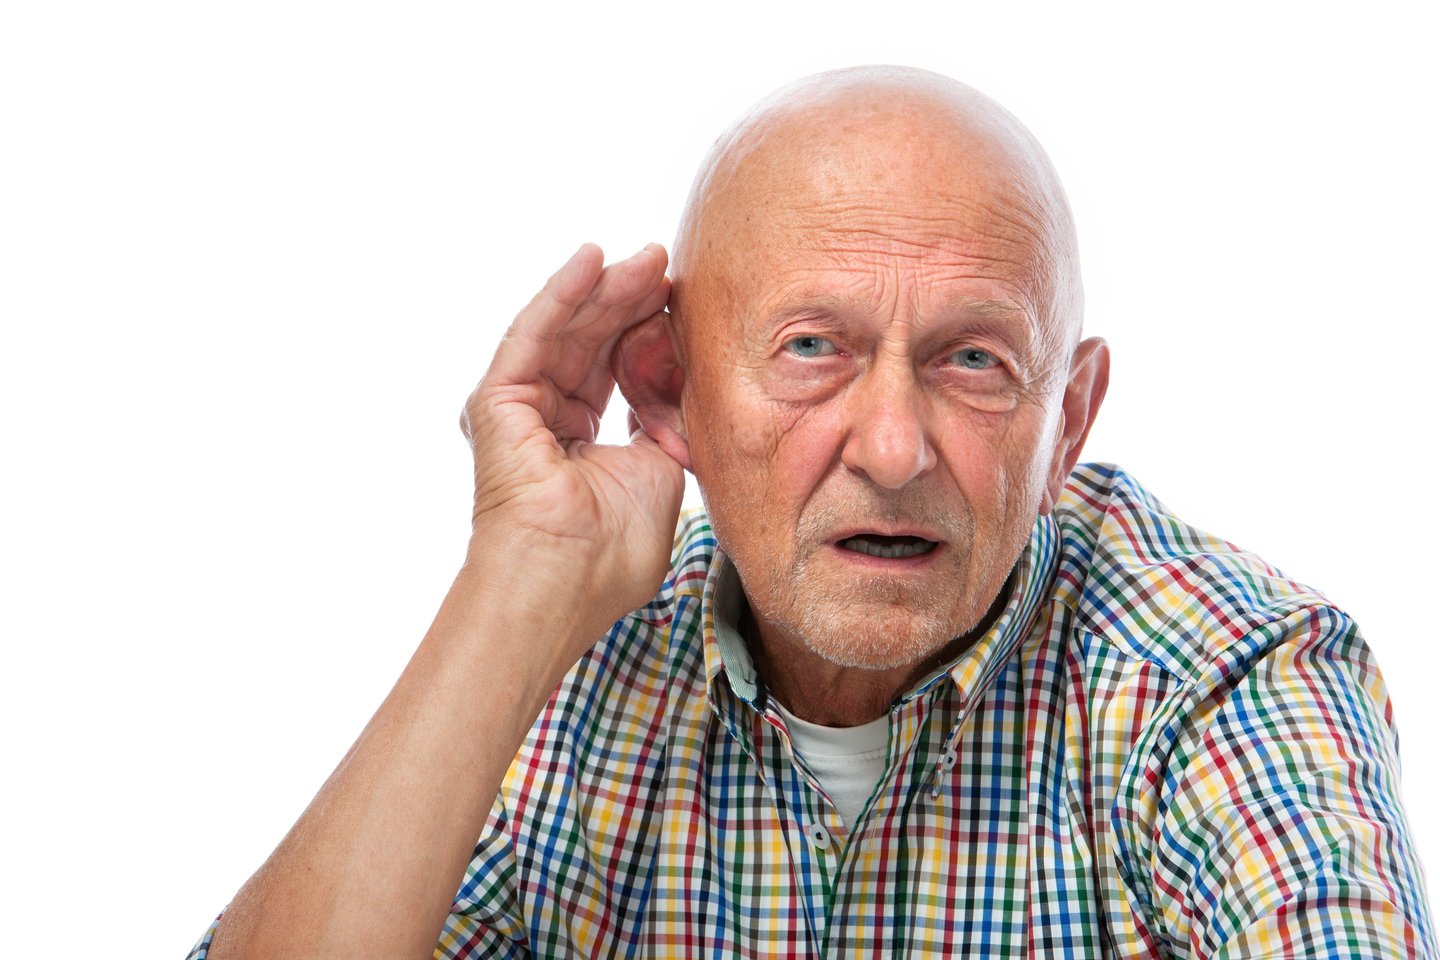 Tyrėjus nustebino, kad klausos sutrikimai yra didesnis demencijos veiksnys nei išsilavinimas ar gyvenimo būdas<br>123rf nuotr.